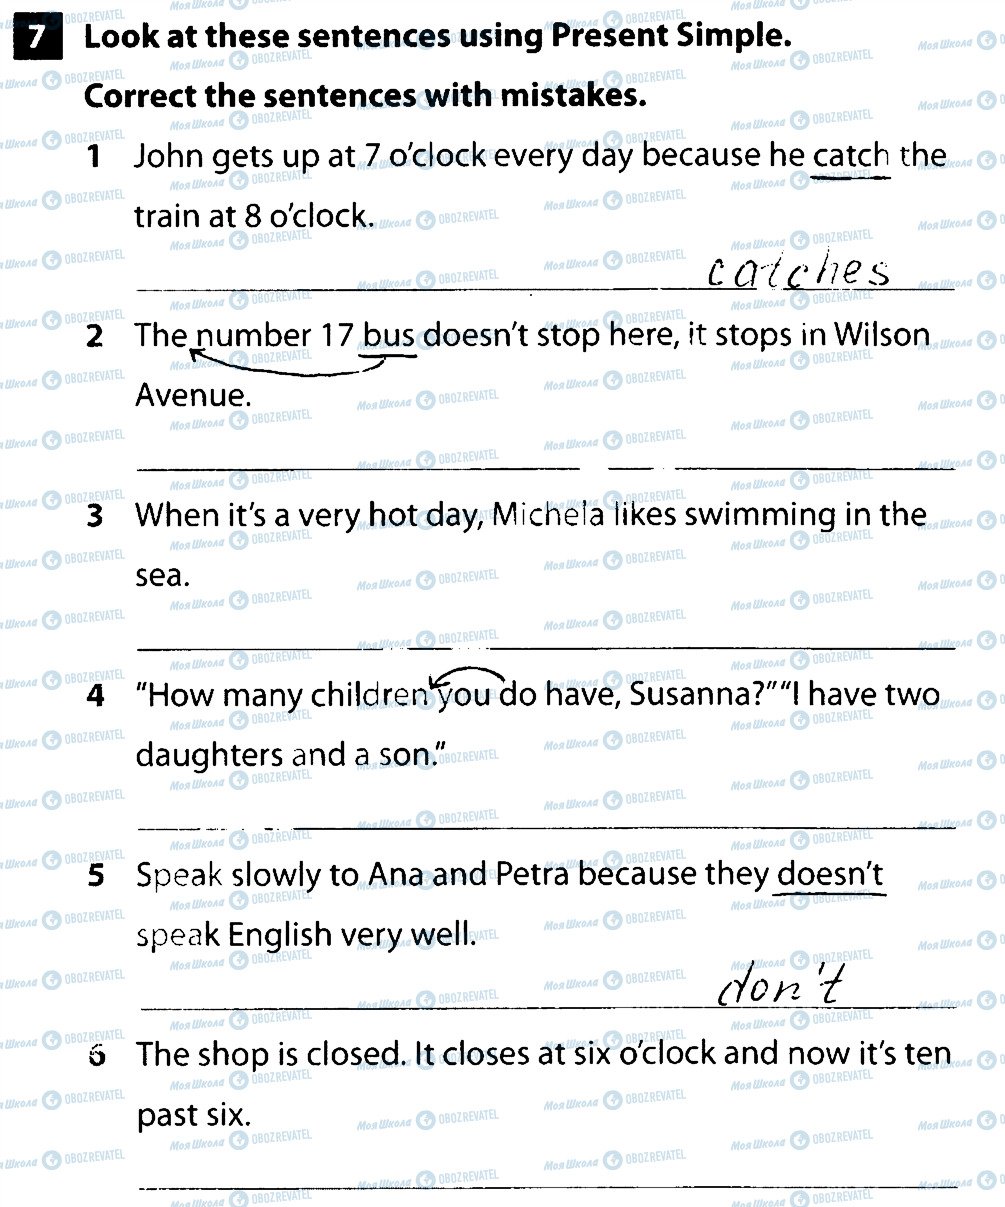 ГДЗ Англійська мова 6 клас сторінка 7